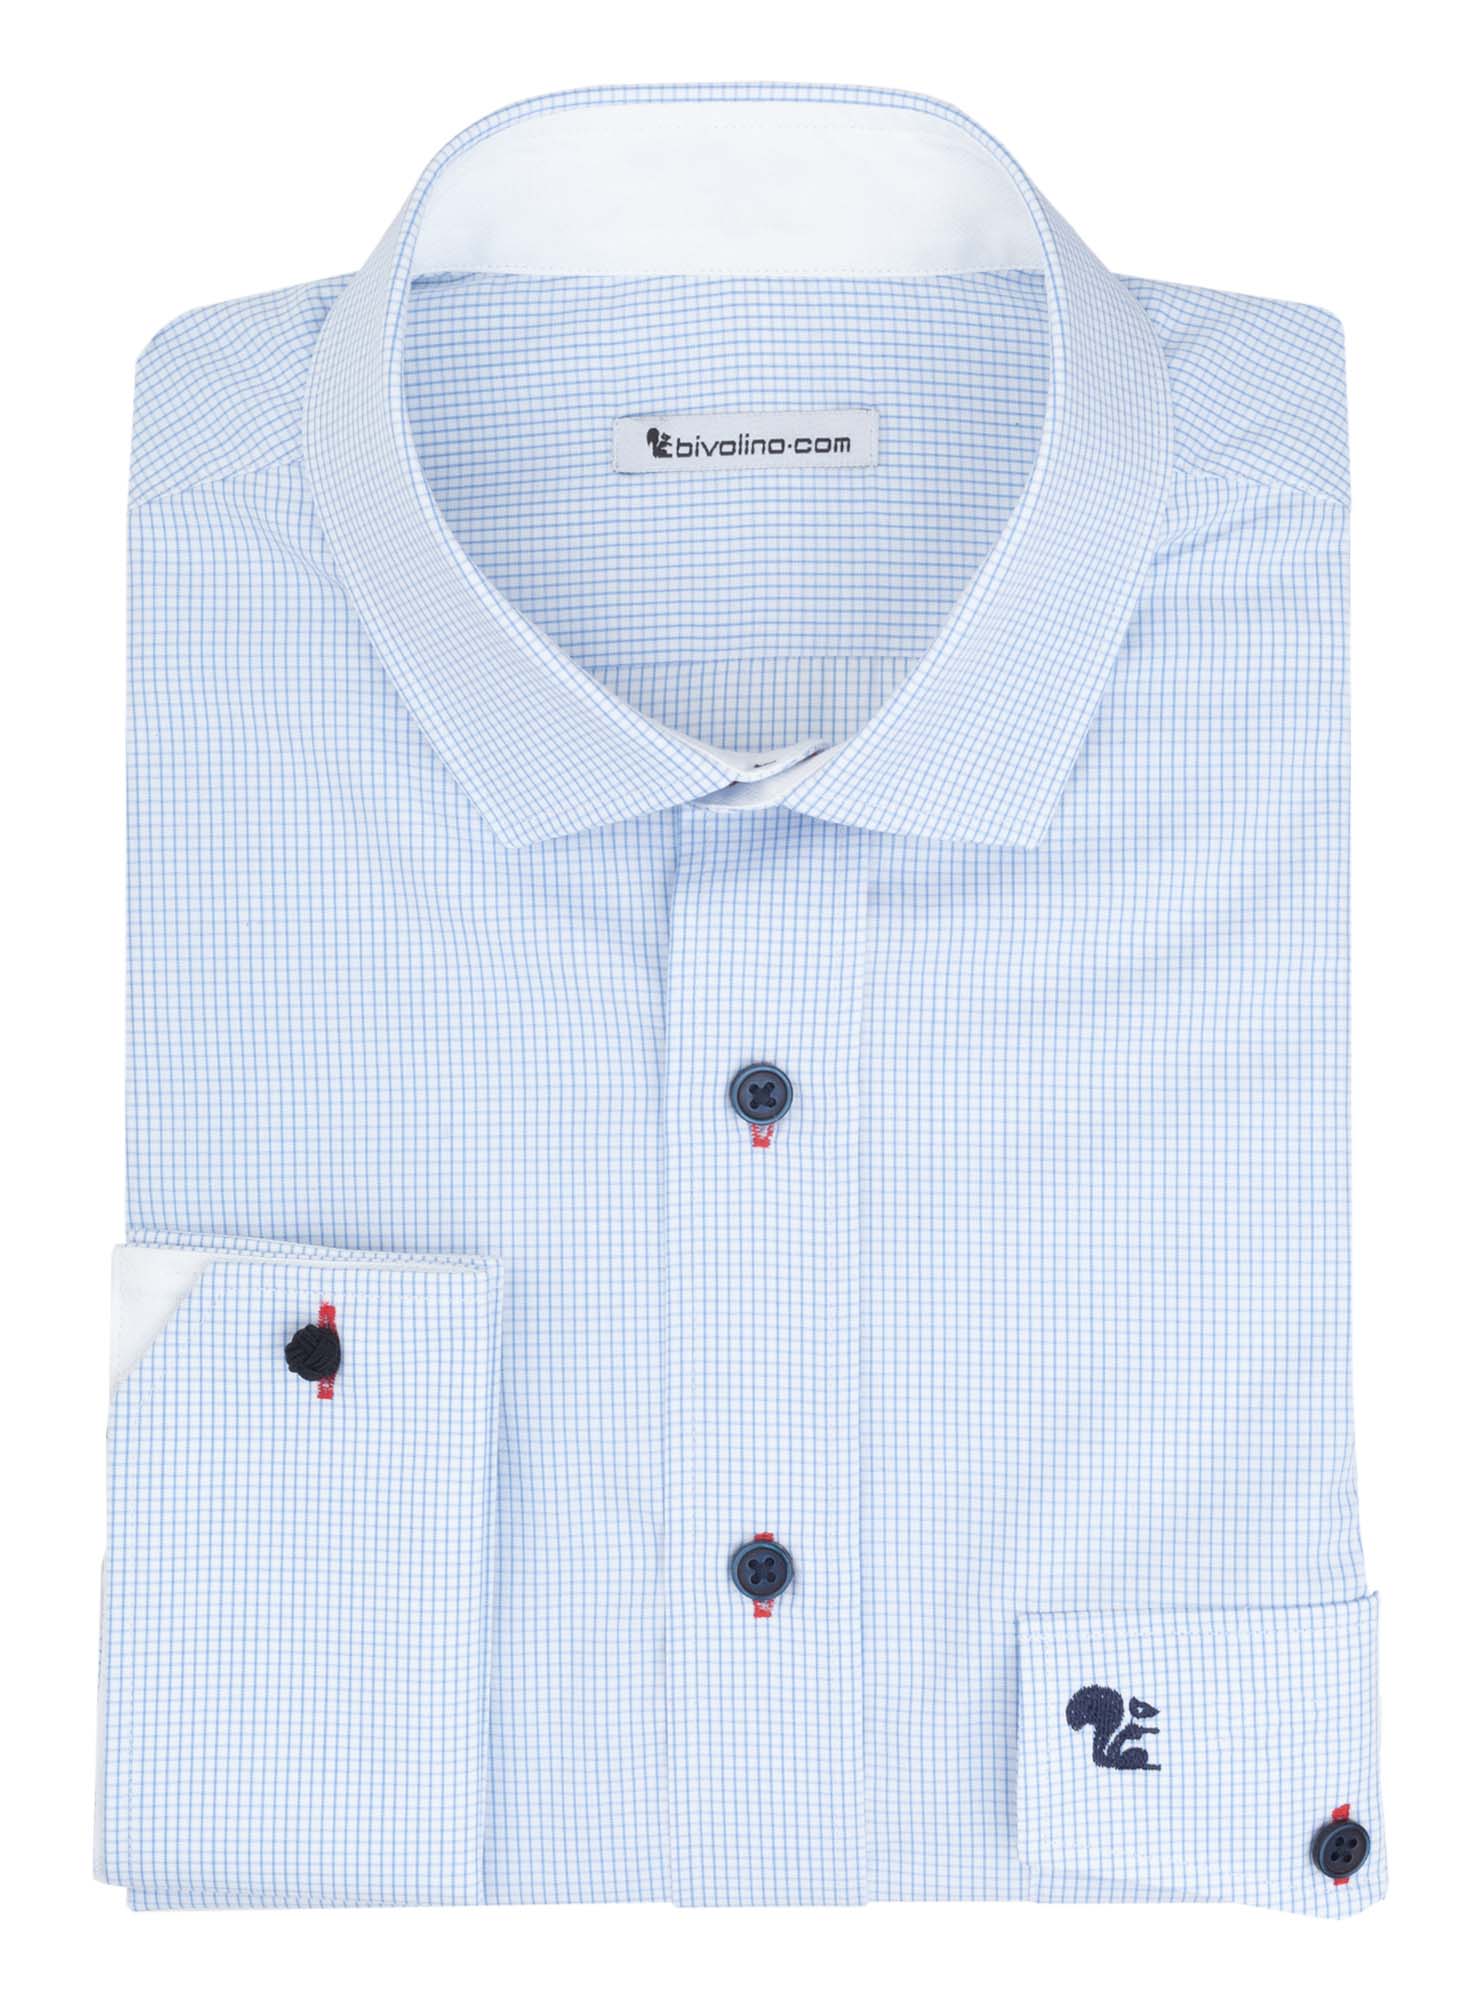 CAGLIARI - camisa de popelina azul a cuadros para hombre - ORIS 3-THOMAS MASON